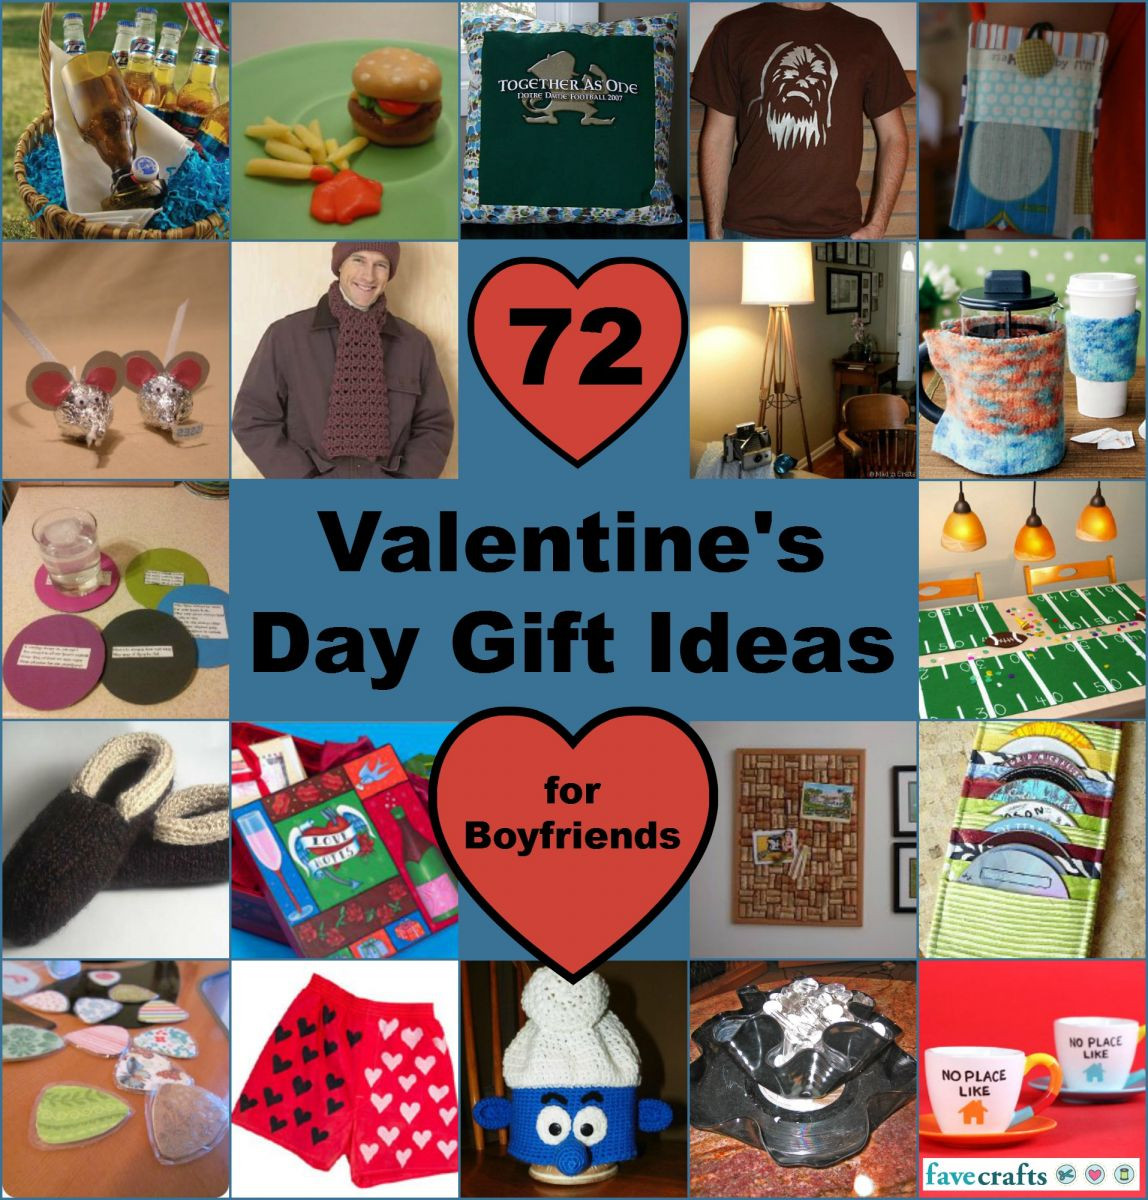 Valentines Day Gift Ideas For Boyfriends
 Gift Ideas for Boyfriend